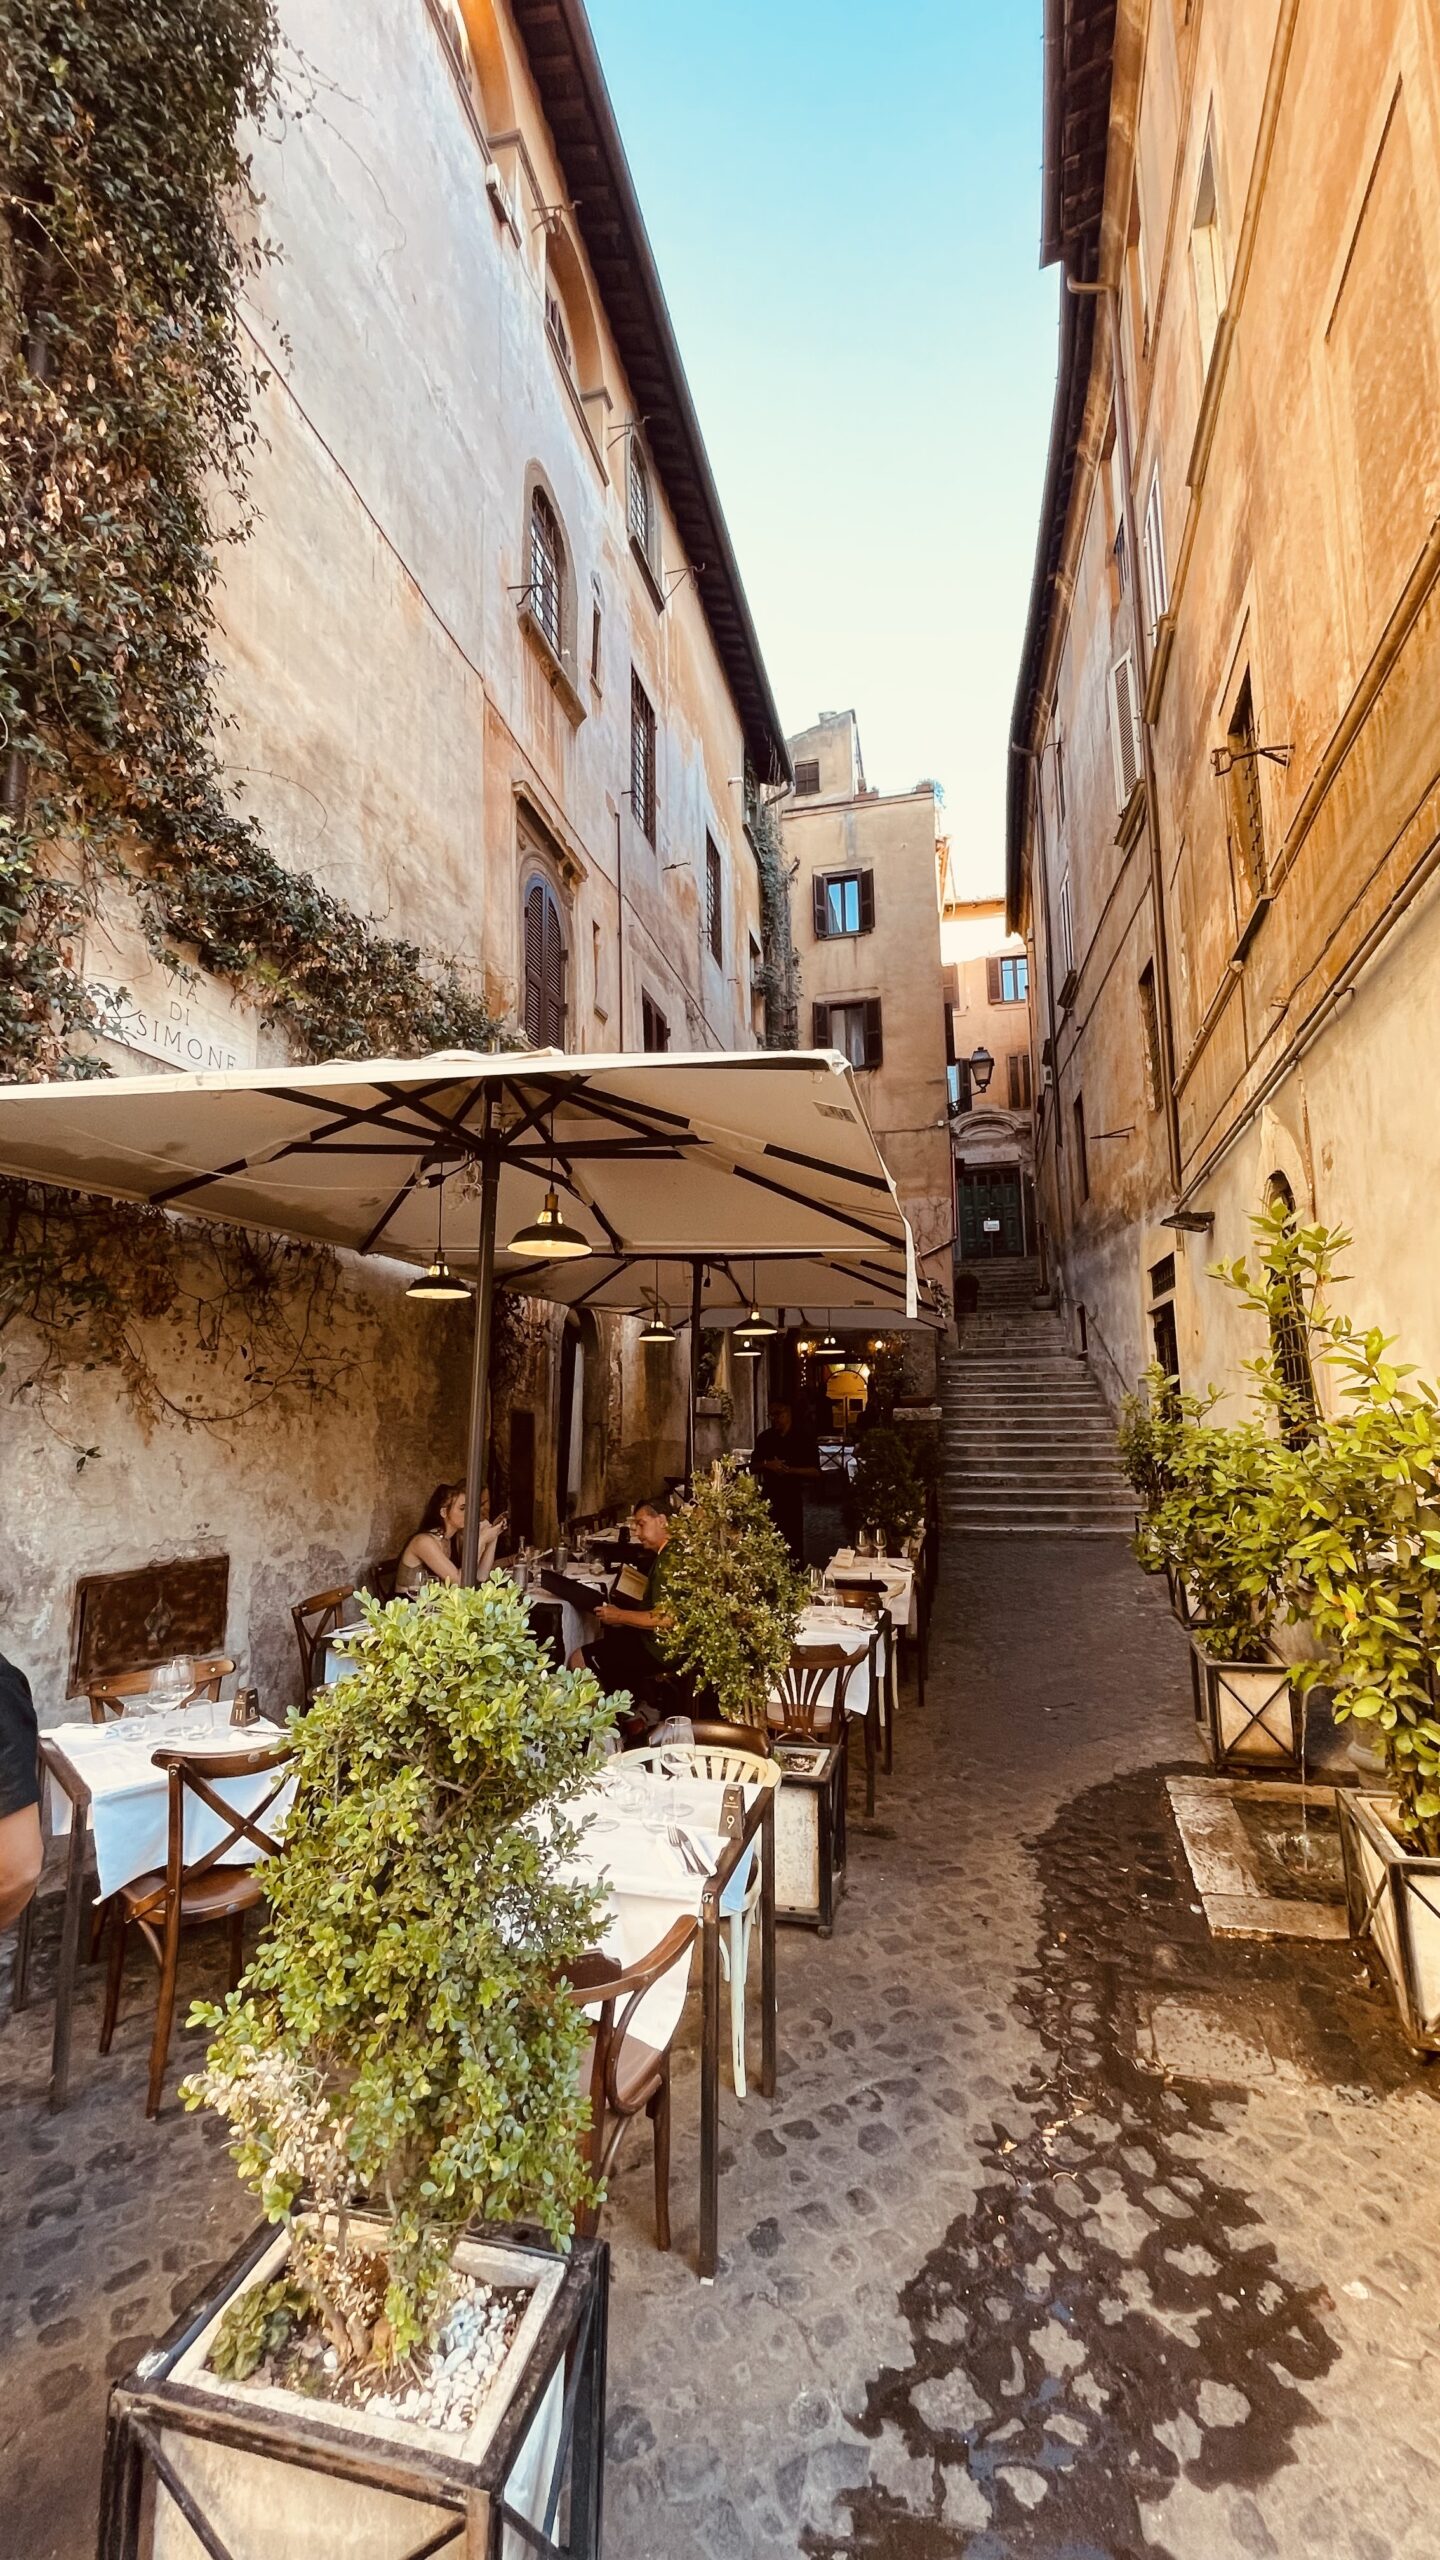 Mangiare tra i vicoli romantici di Roma, in una traversa di via dei Coronari. La Cucina del Teatro è un posto speciale dove mangiare piatti di stagione e del territorio rivisitati dalle sapienti mani dello chef.